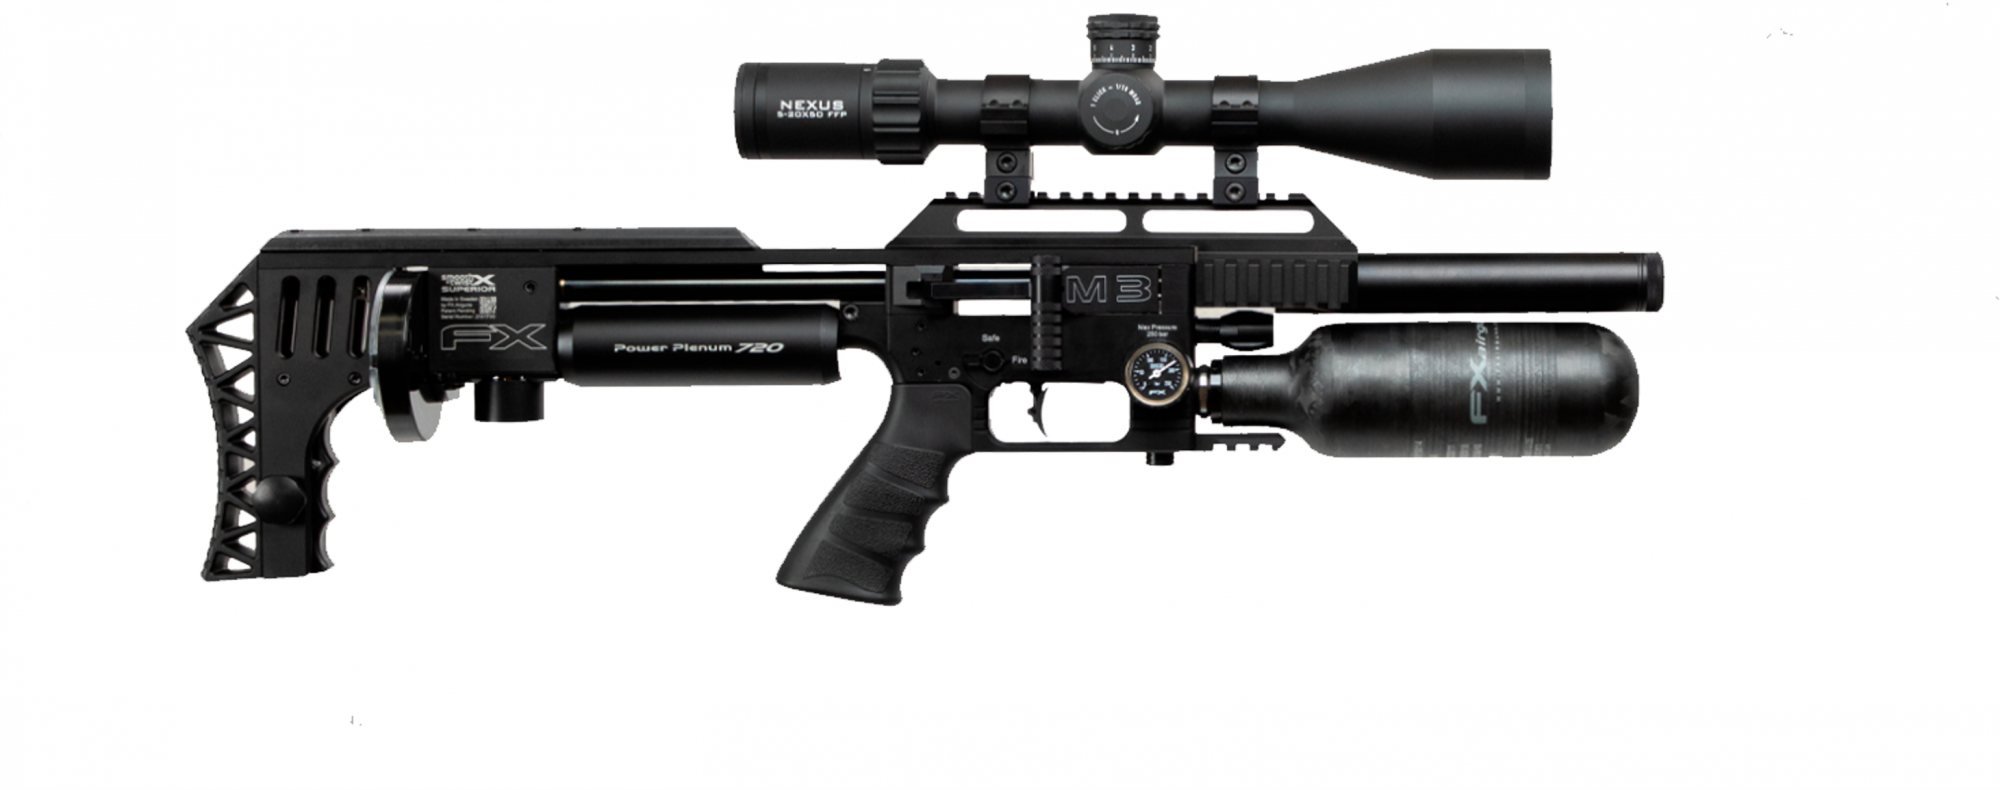 Fx Airguns Fx Impact M3 Black Compact Pcp Air Rifle Rifleman Firearms 6174